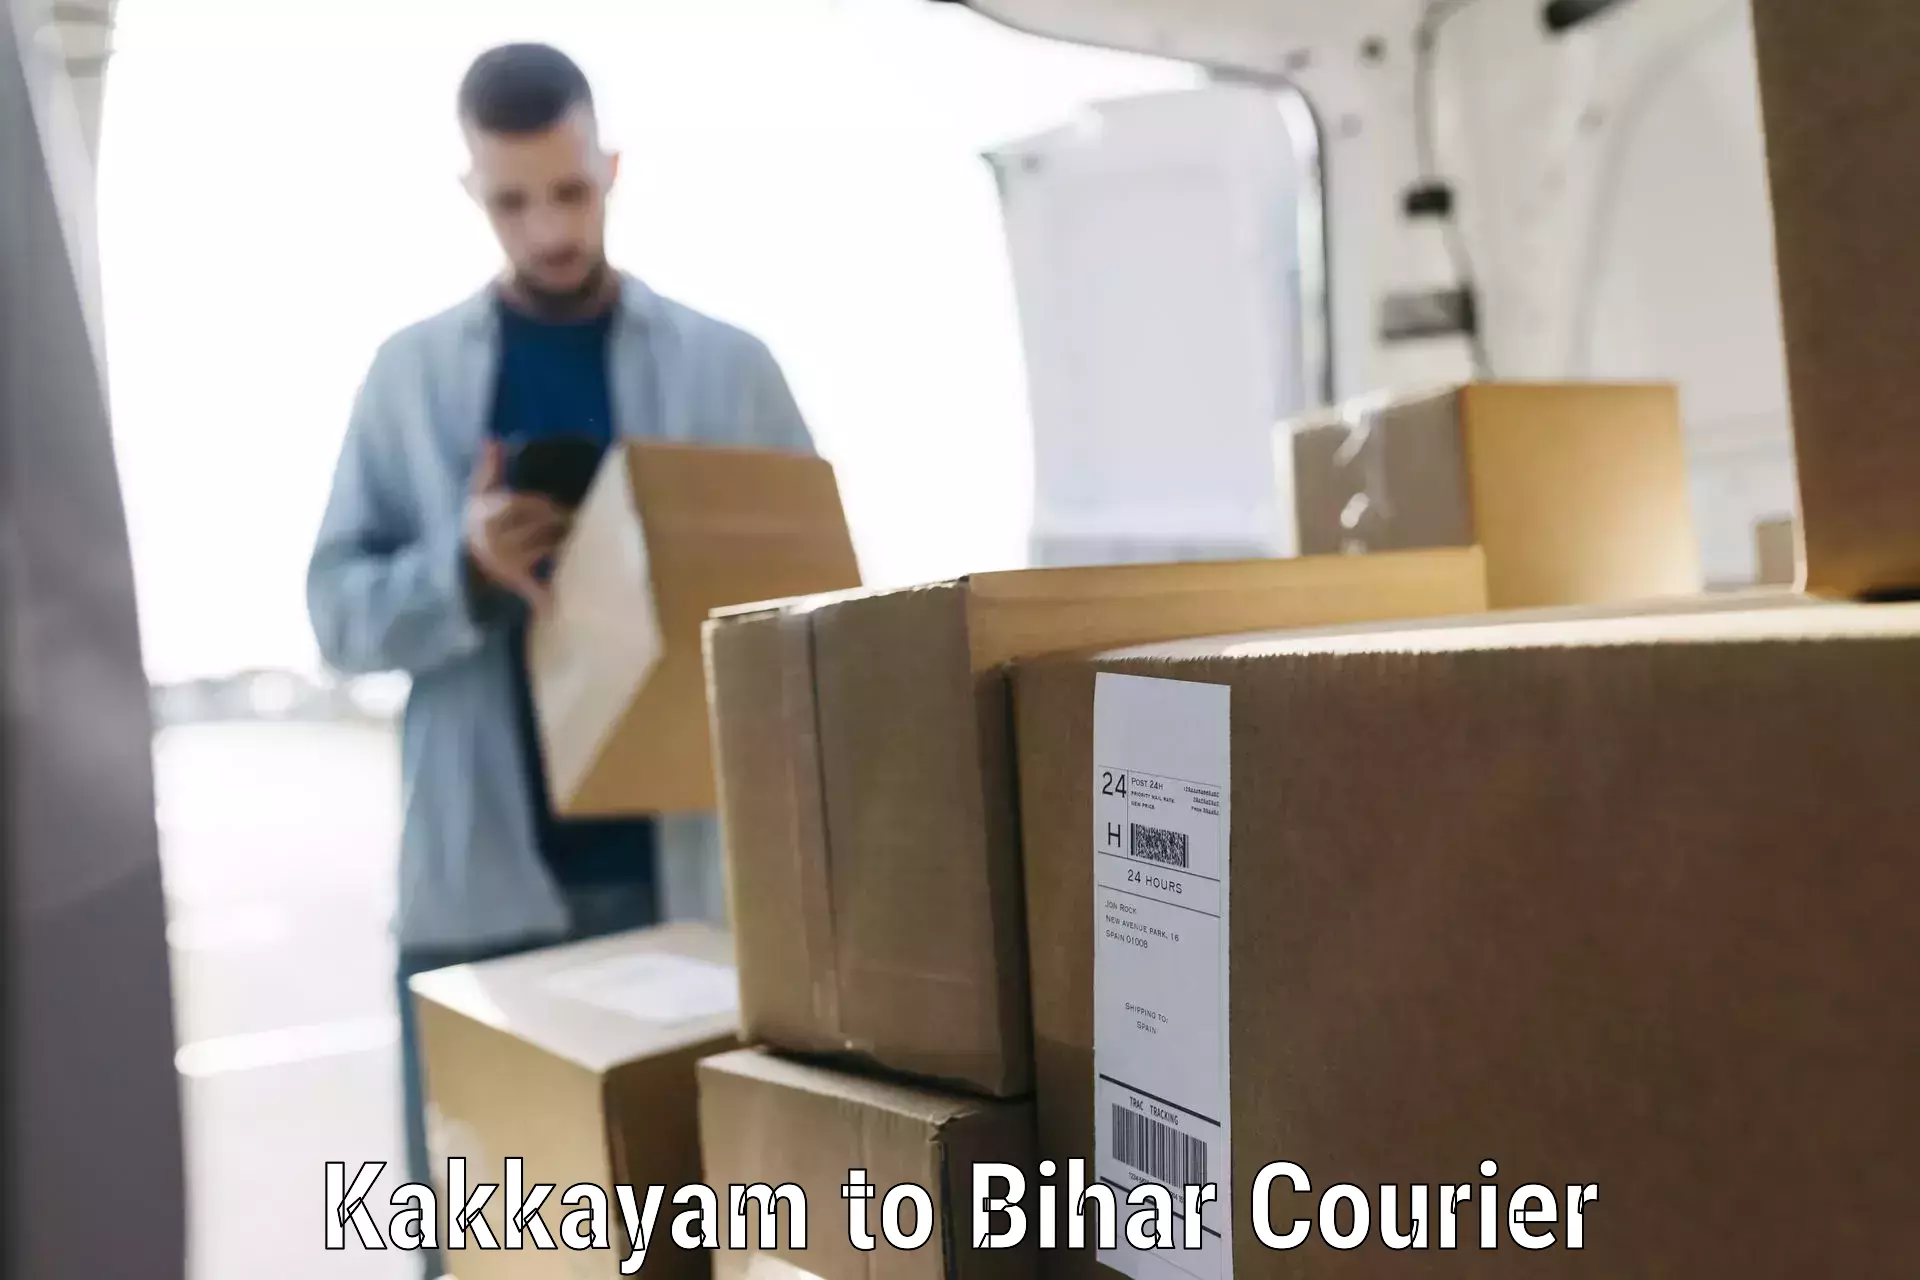 Luggage delivery app Kakkayam to Bihar